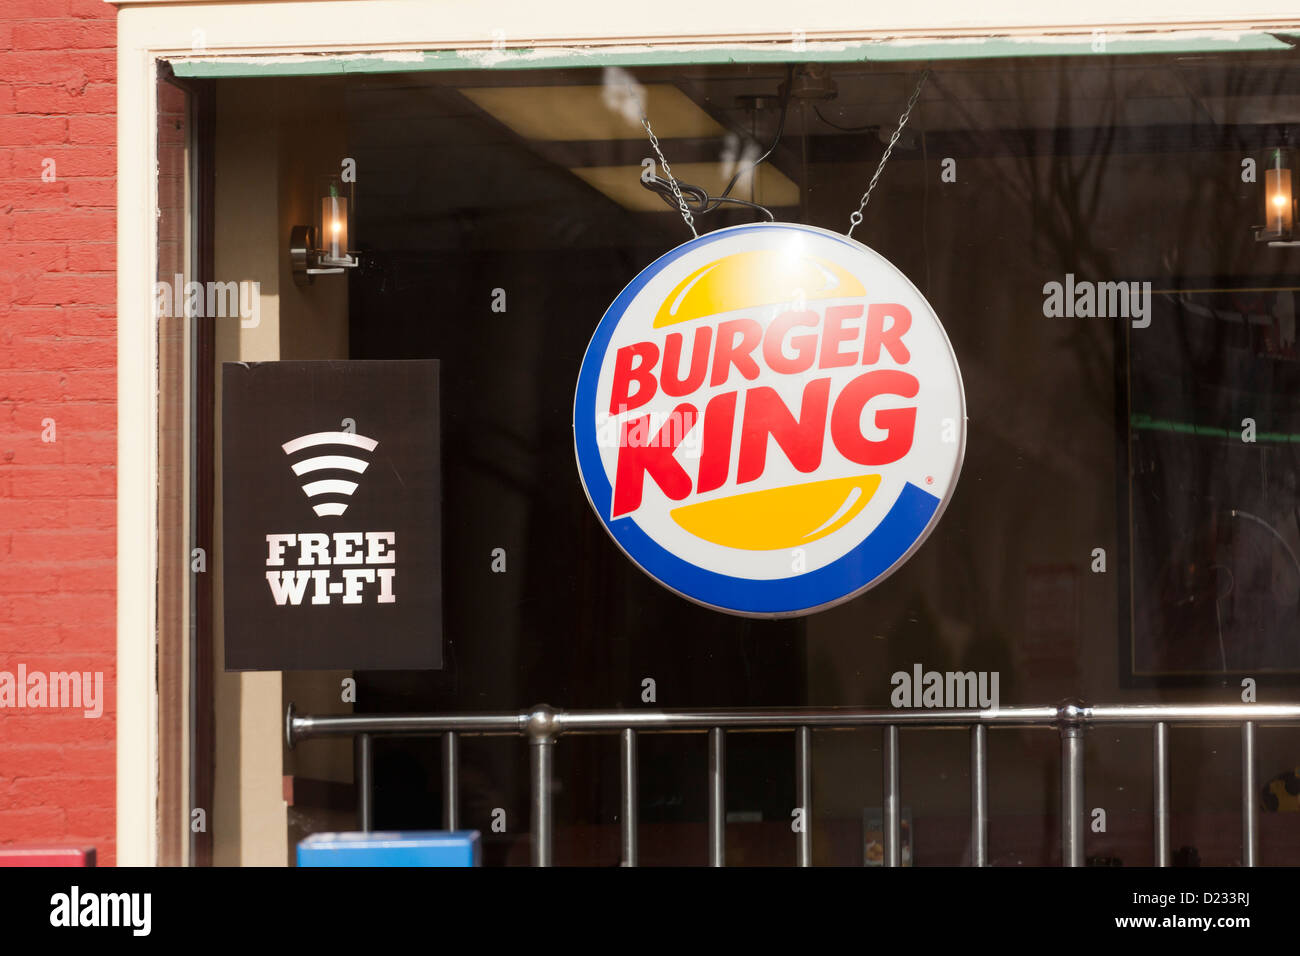 Burger King ristorante finestra con WiFi gratuito segno di servizio Foto Stock